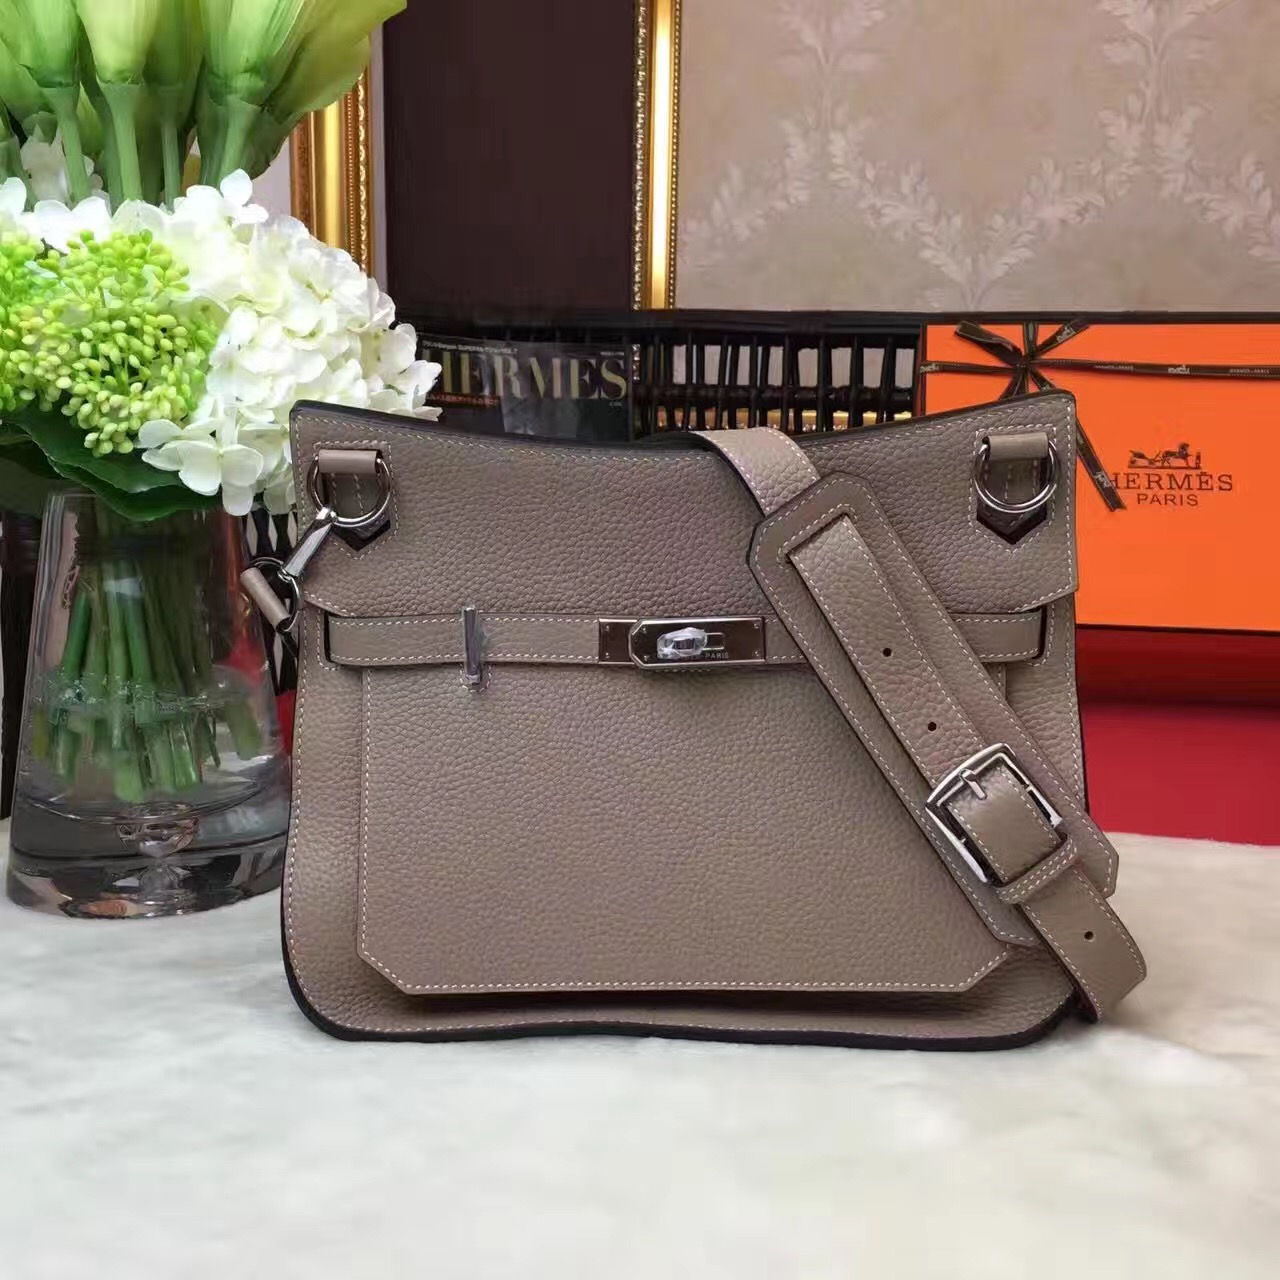 Hermes Jypsiere top leather gray handbags